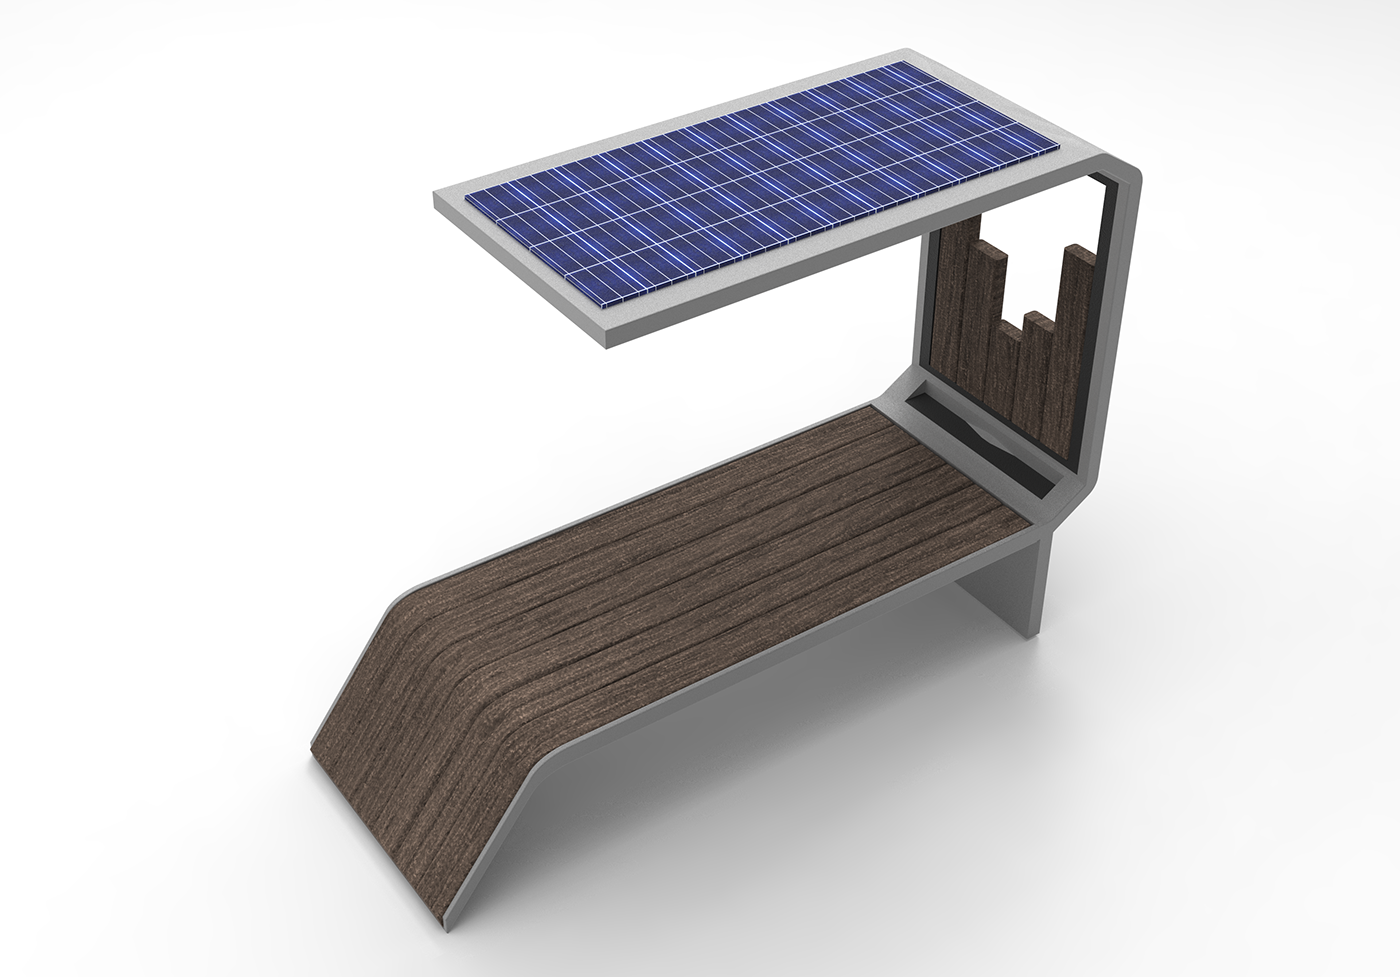 public bench mobilier urbain design mobilier design produit wireless charging solar panel smart furniture street furniture mibilier connecté